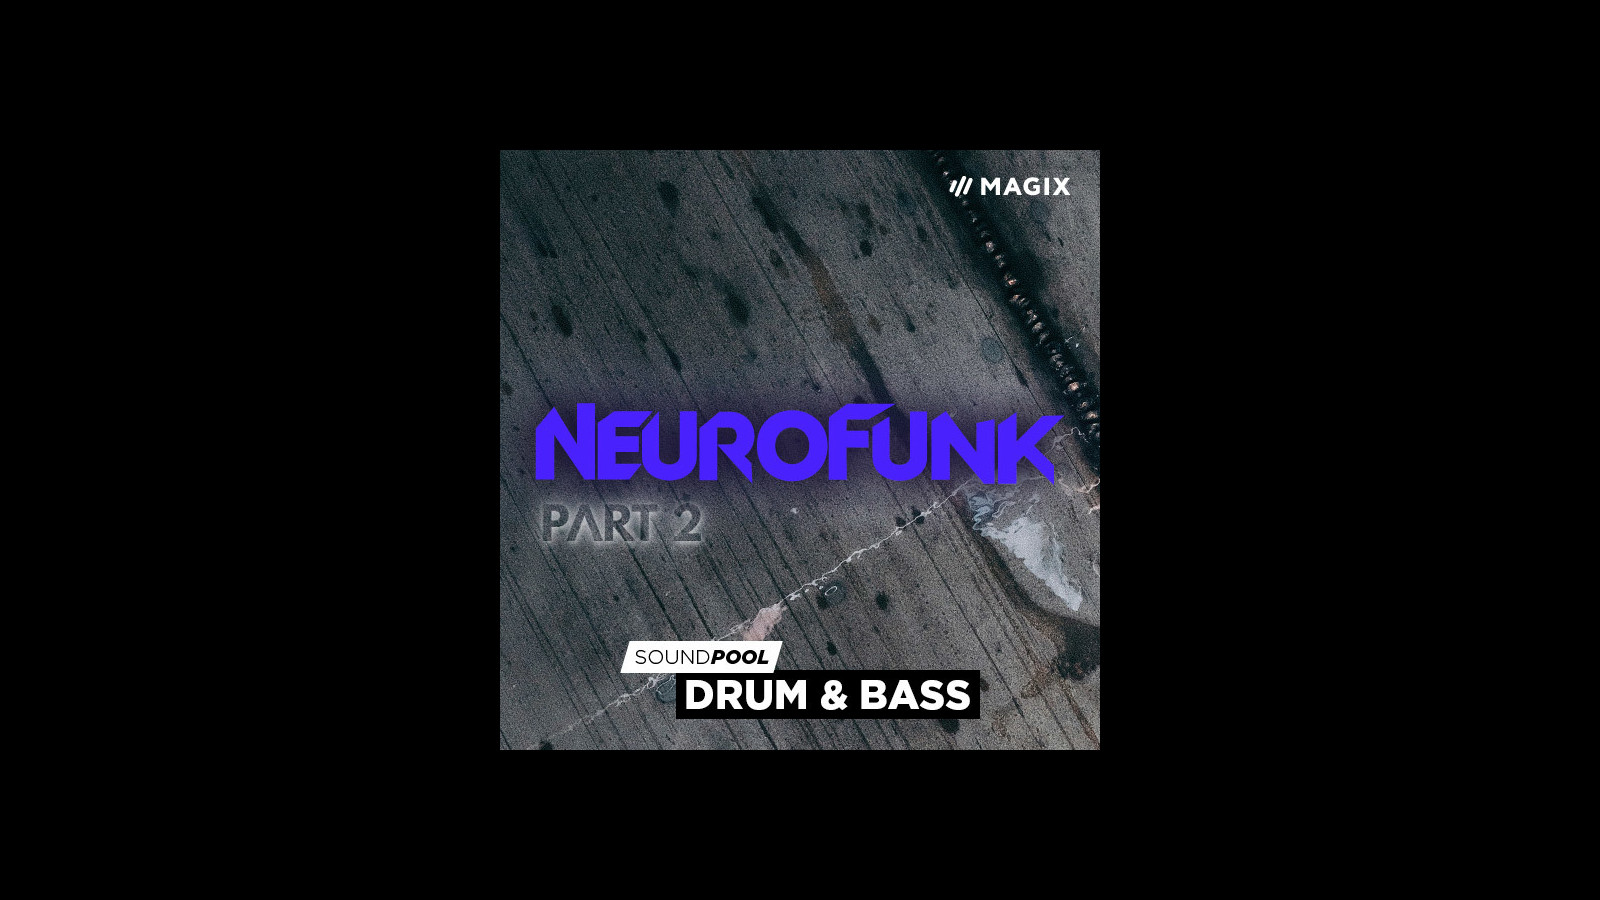 [$ 5.65] MAGIX Soundpool Neurofunk - Part 2 ProducerPlanet CD Key